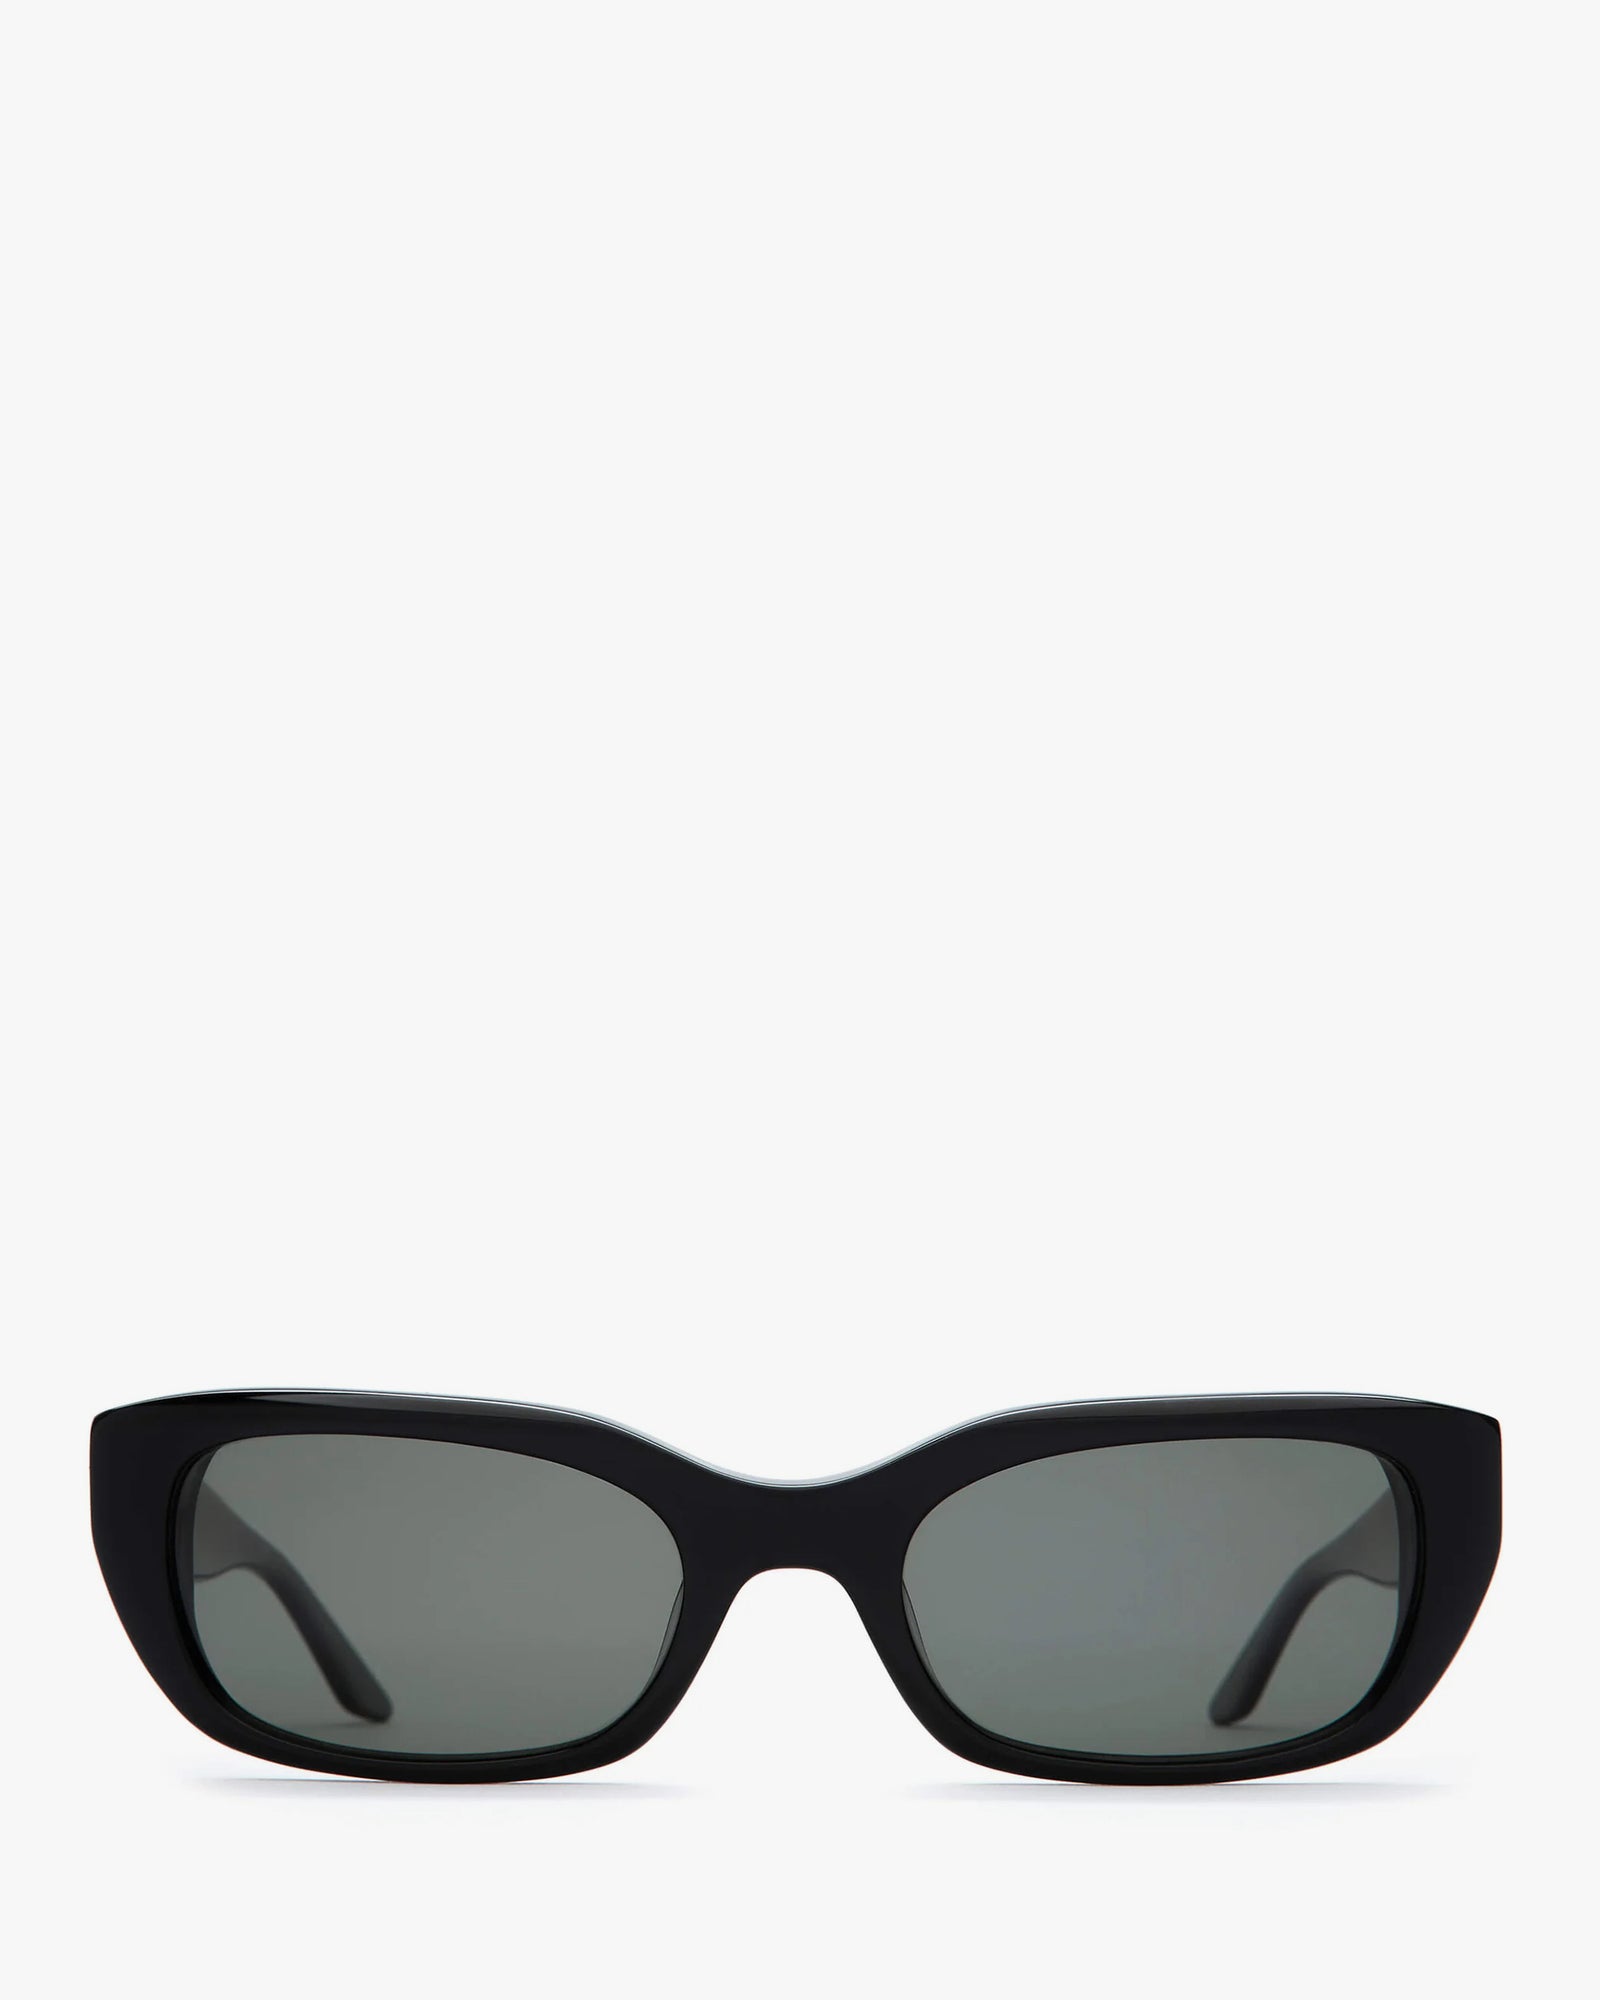 Monogram Hinge Narrow Cat Eye Sunglasses